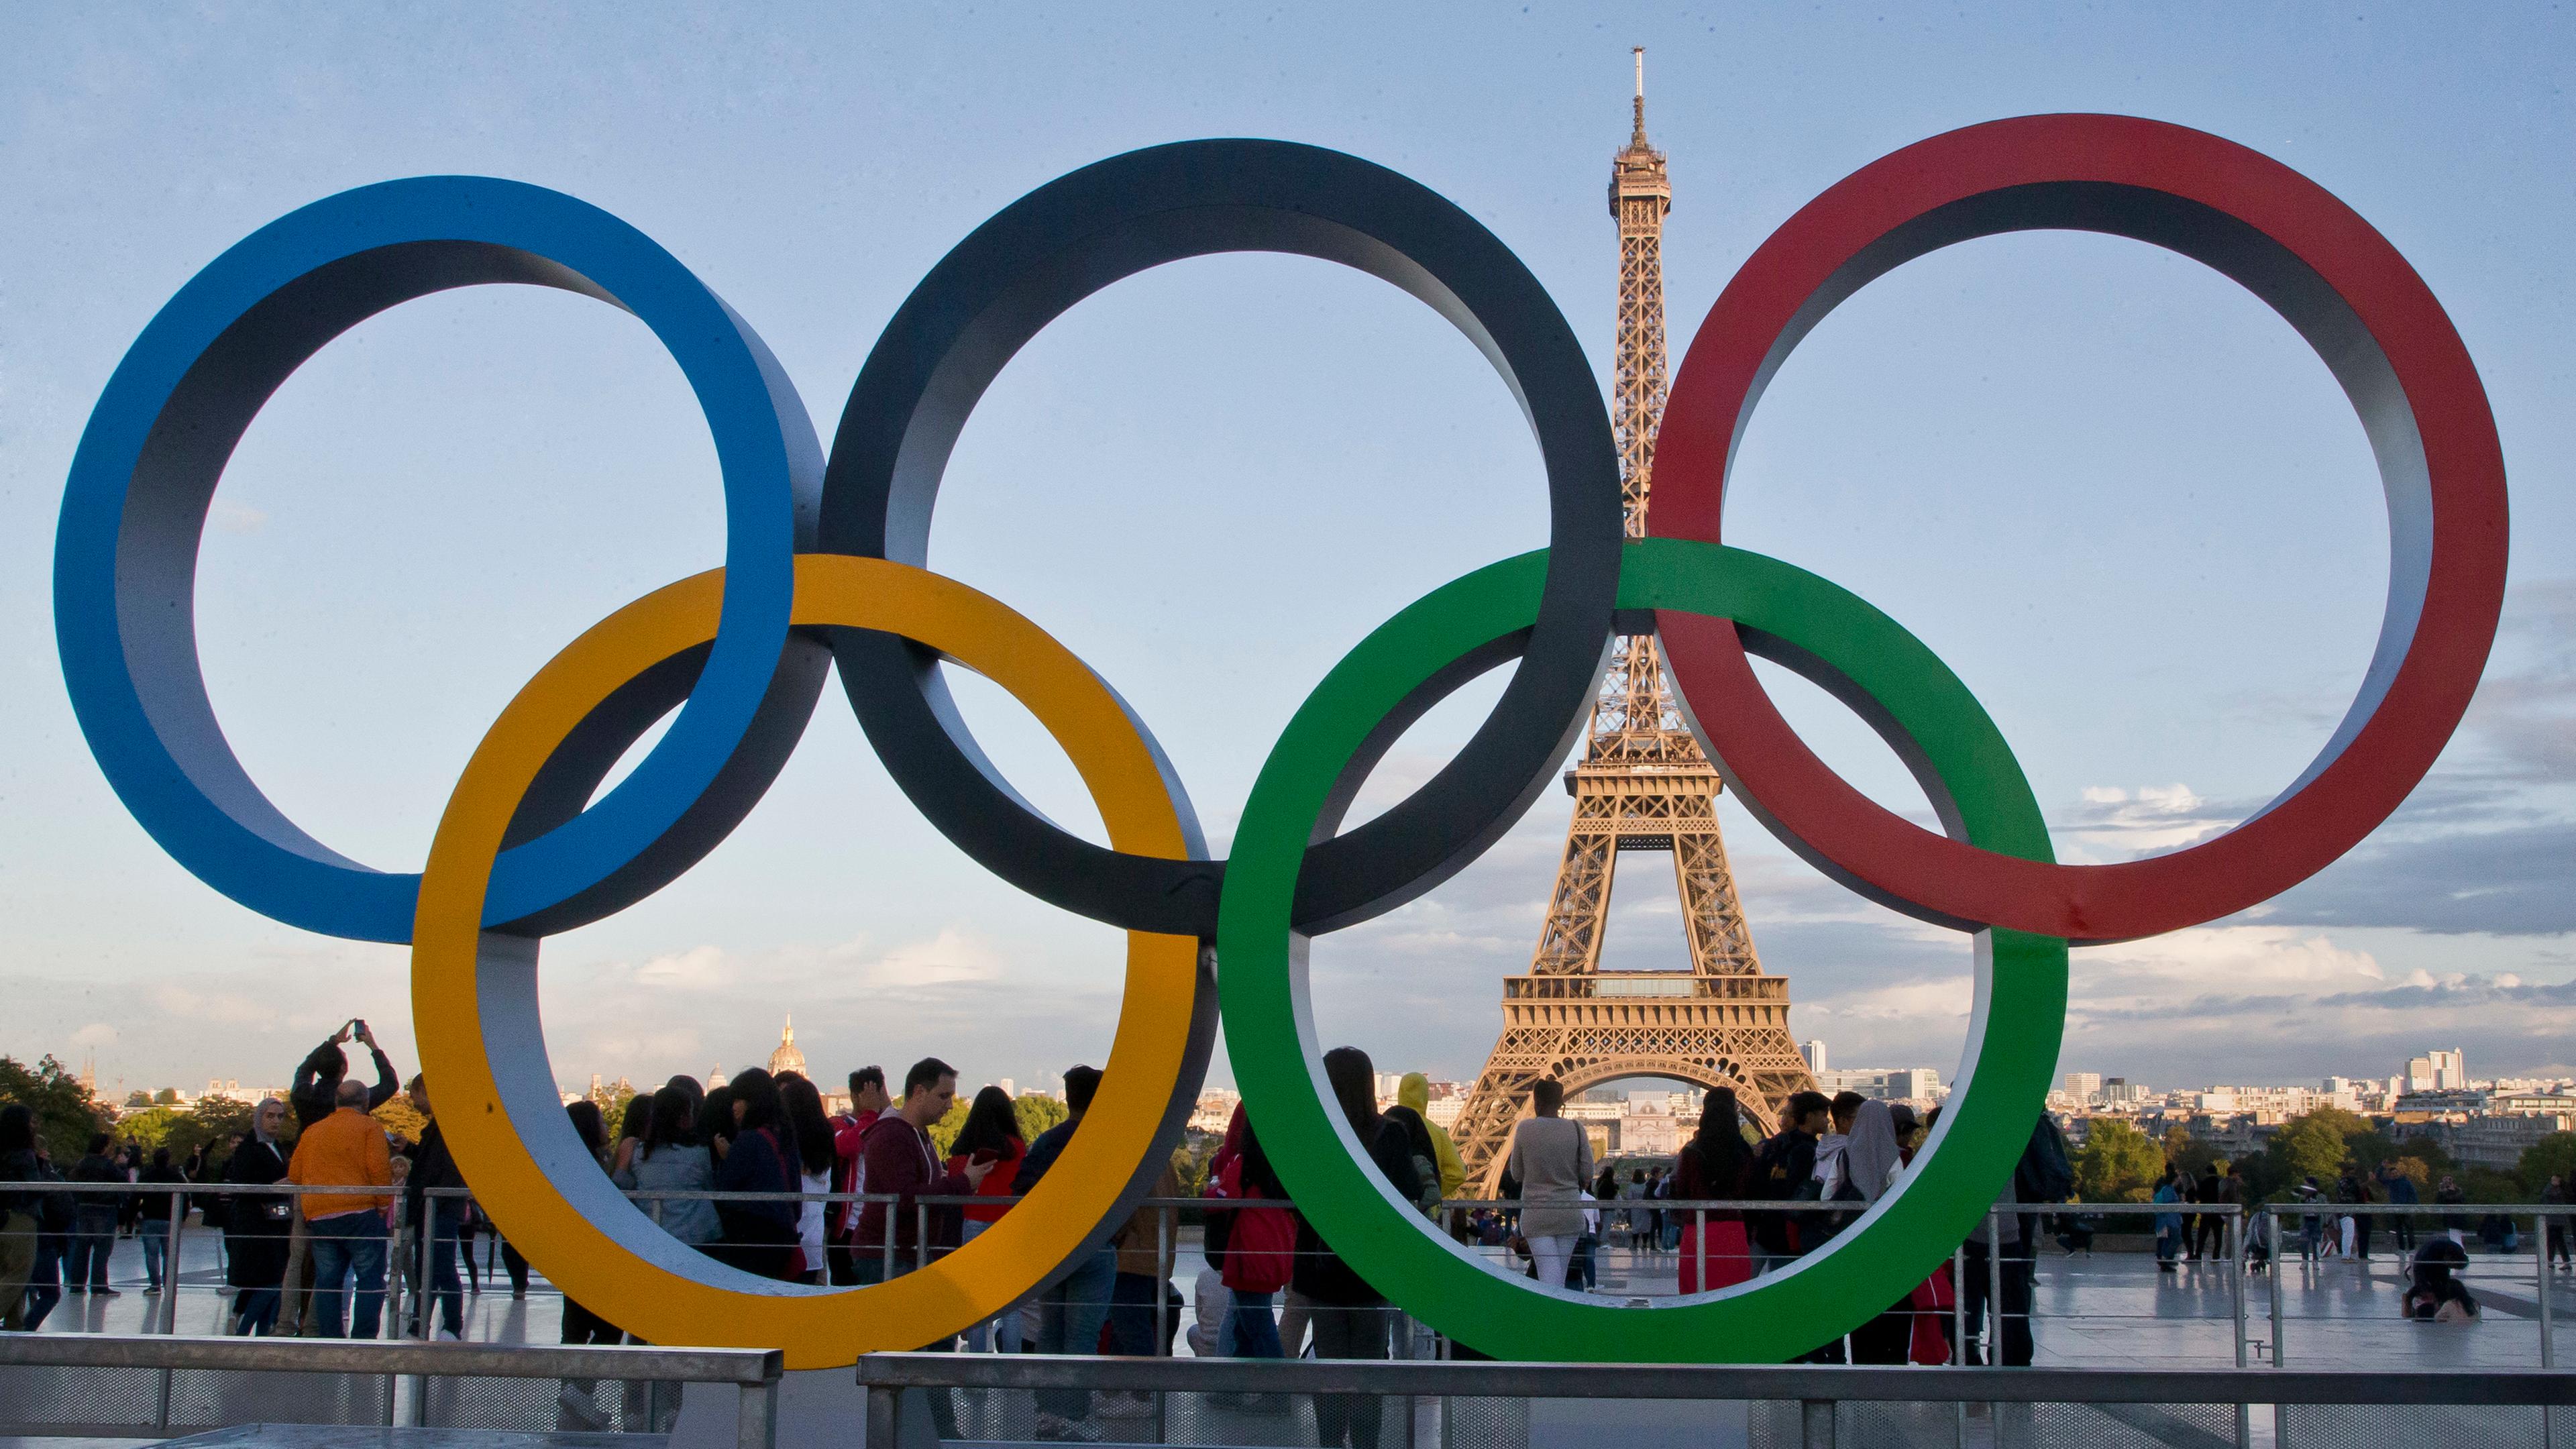 Frankreich, Paris: Die Olympischen Ringe 2017 in Paris vor dem Eiffelturm. Archivbild